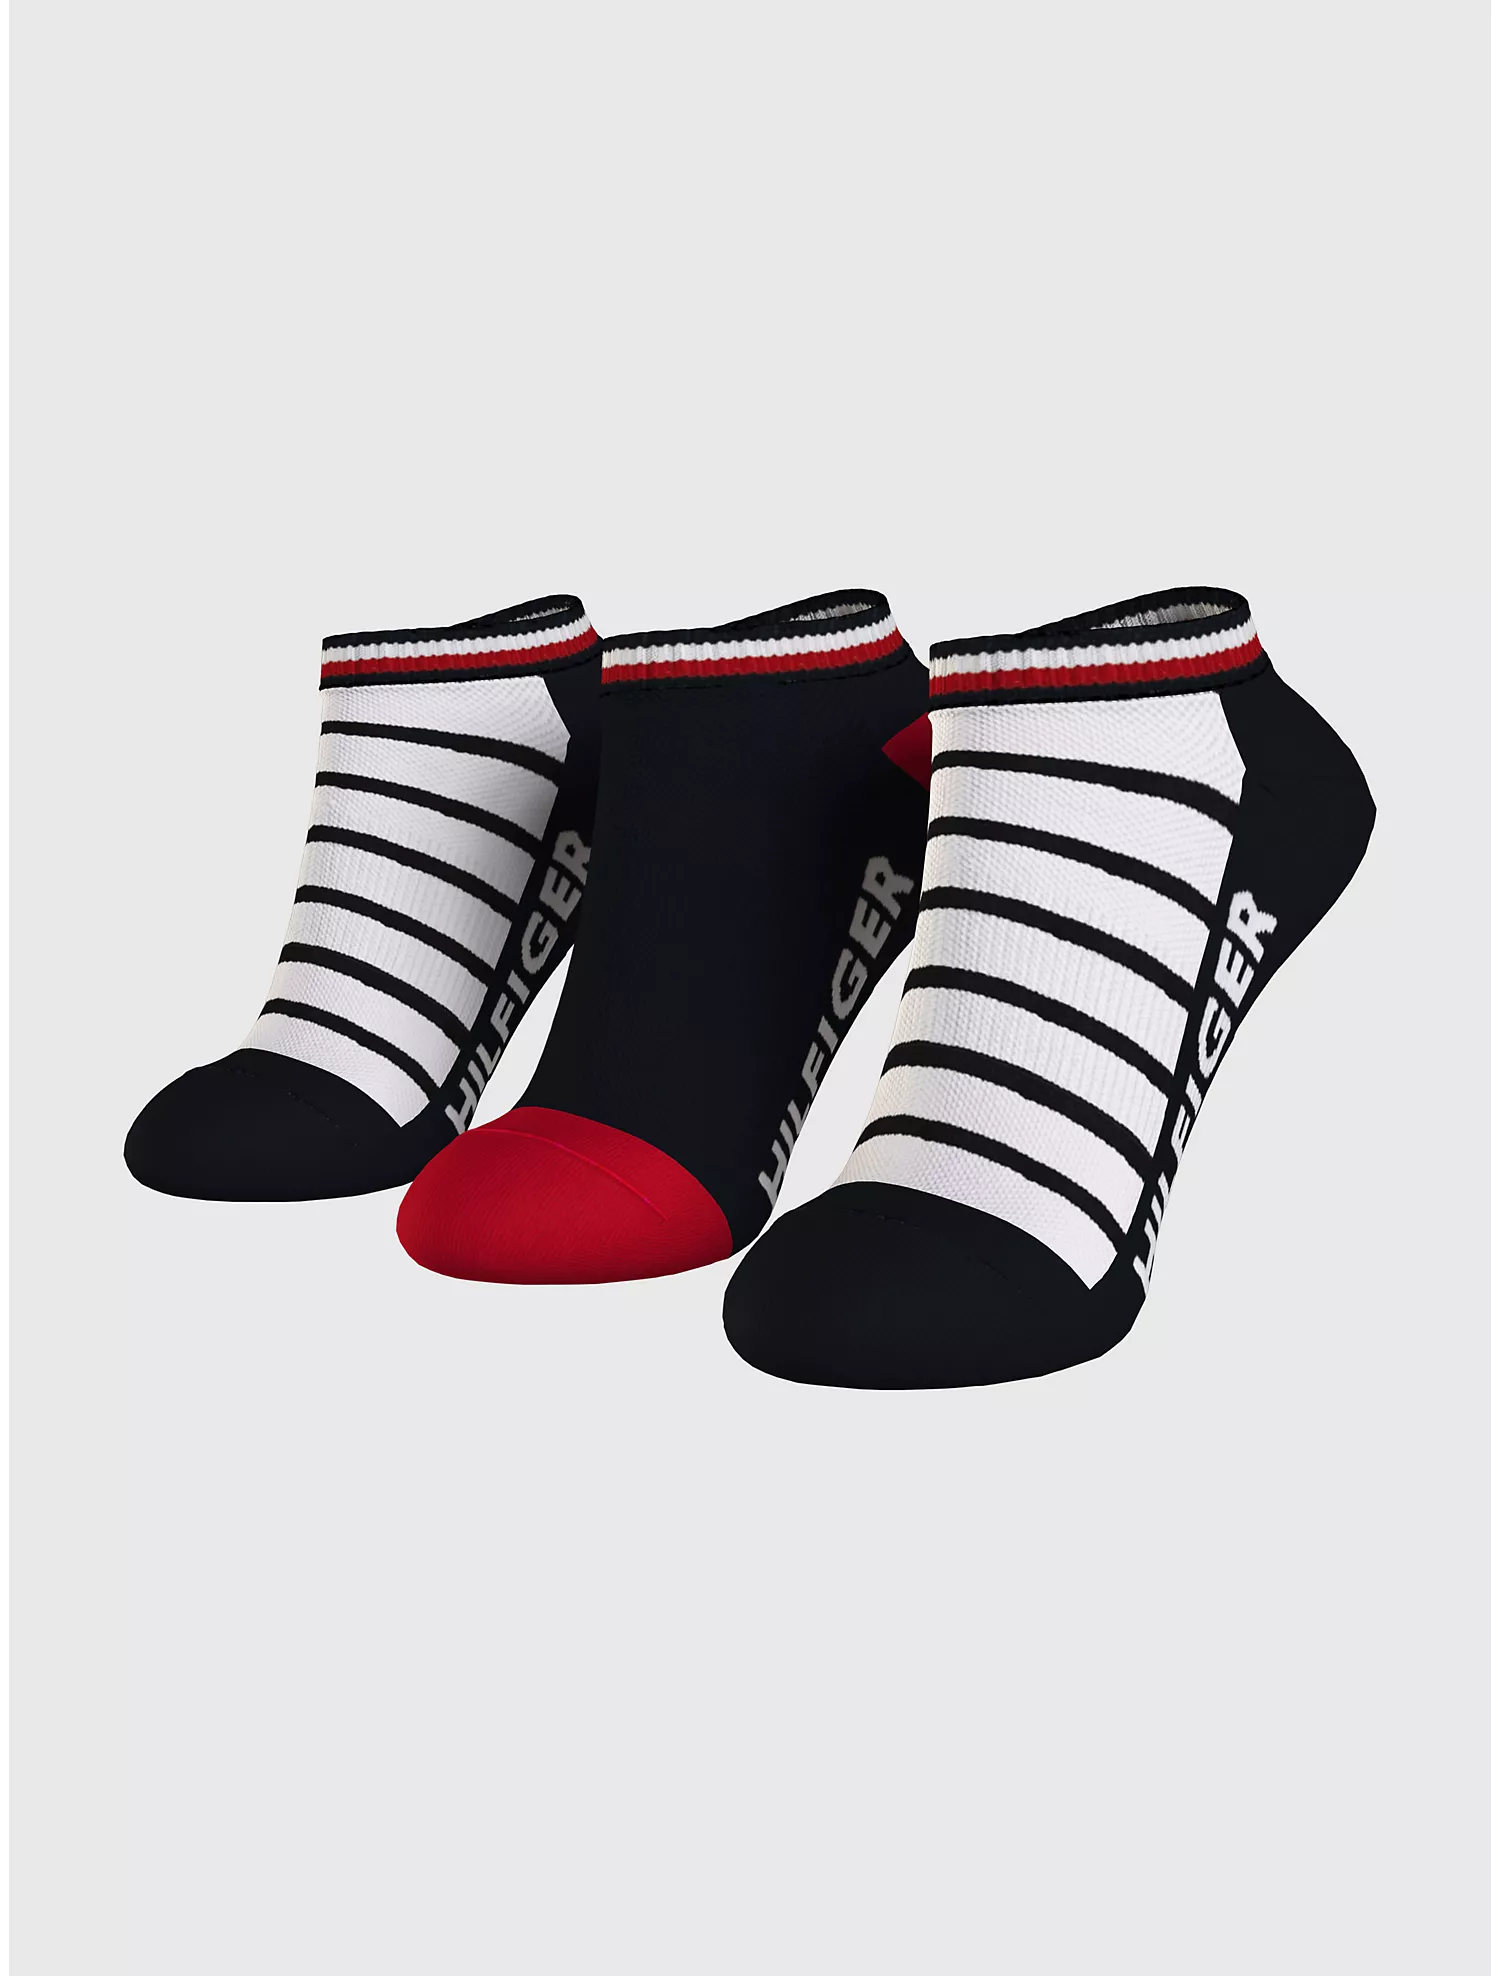 Комплект носков женских Tommy Hilfiger 69J8231 черных one size 3 пары